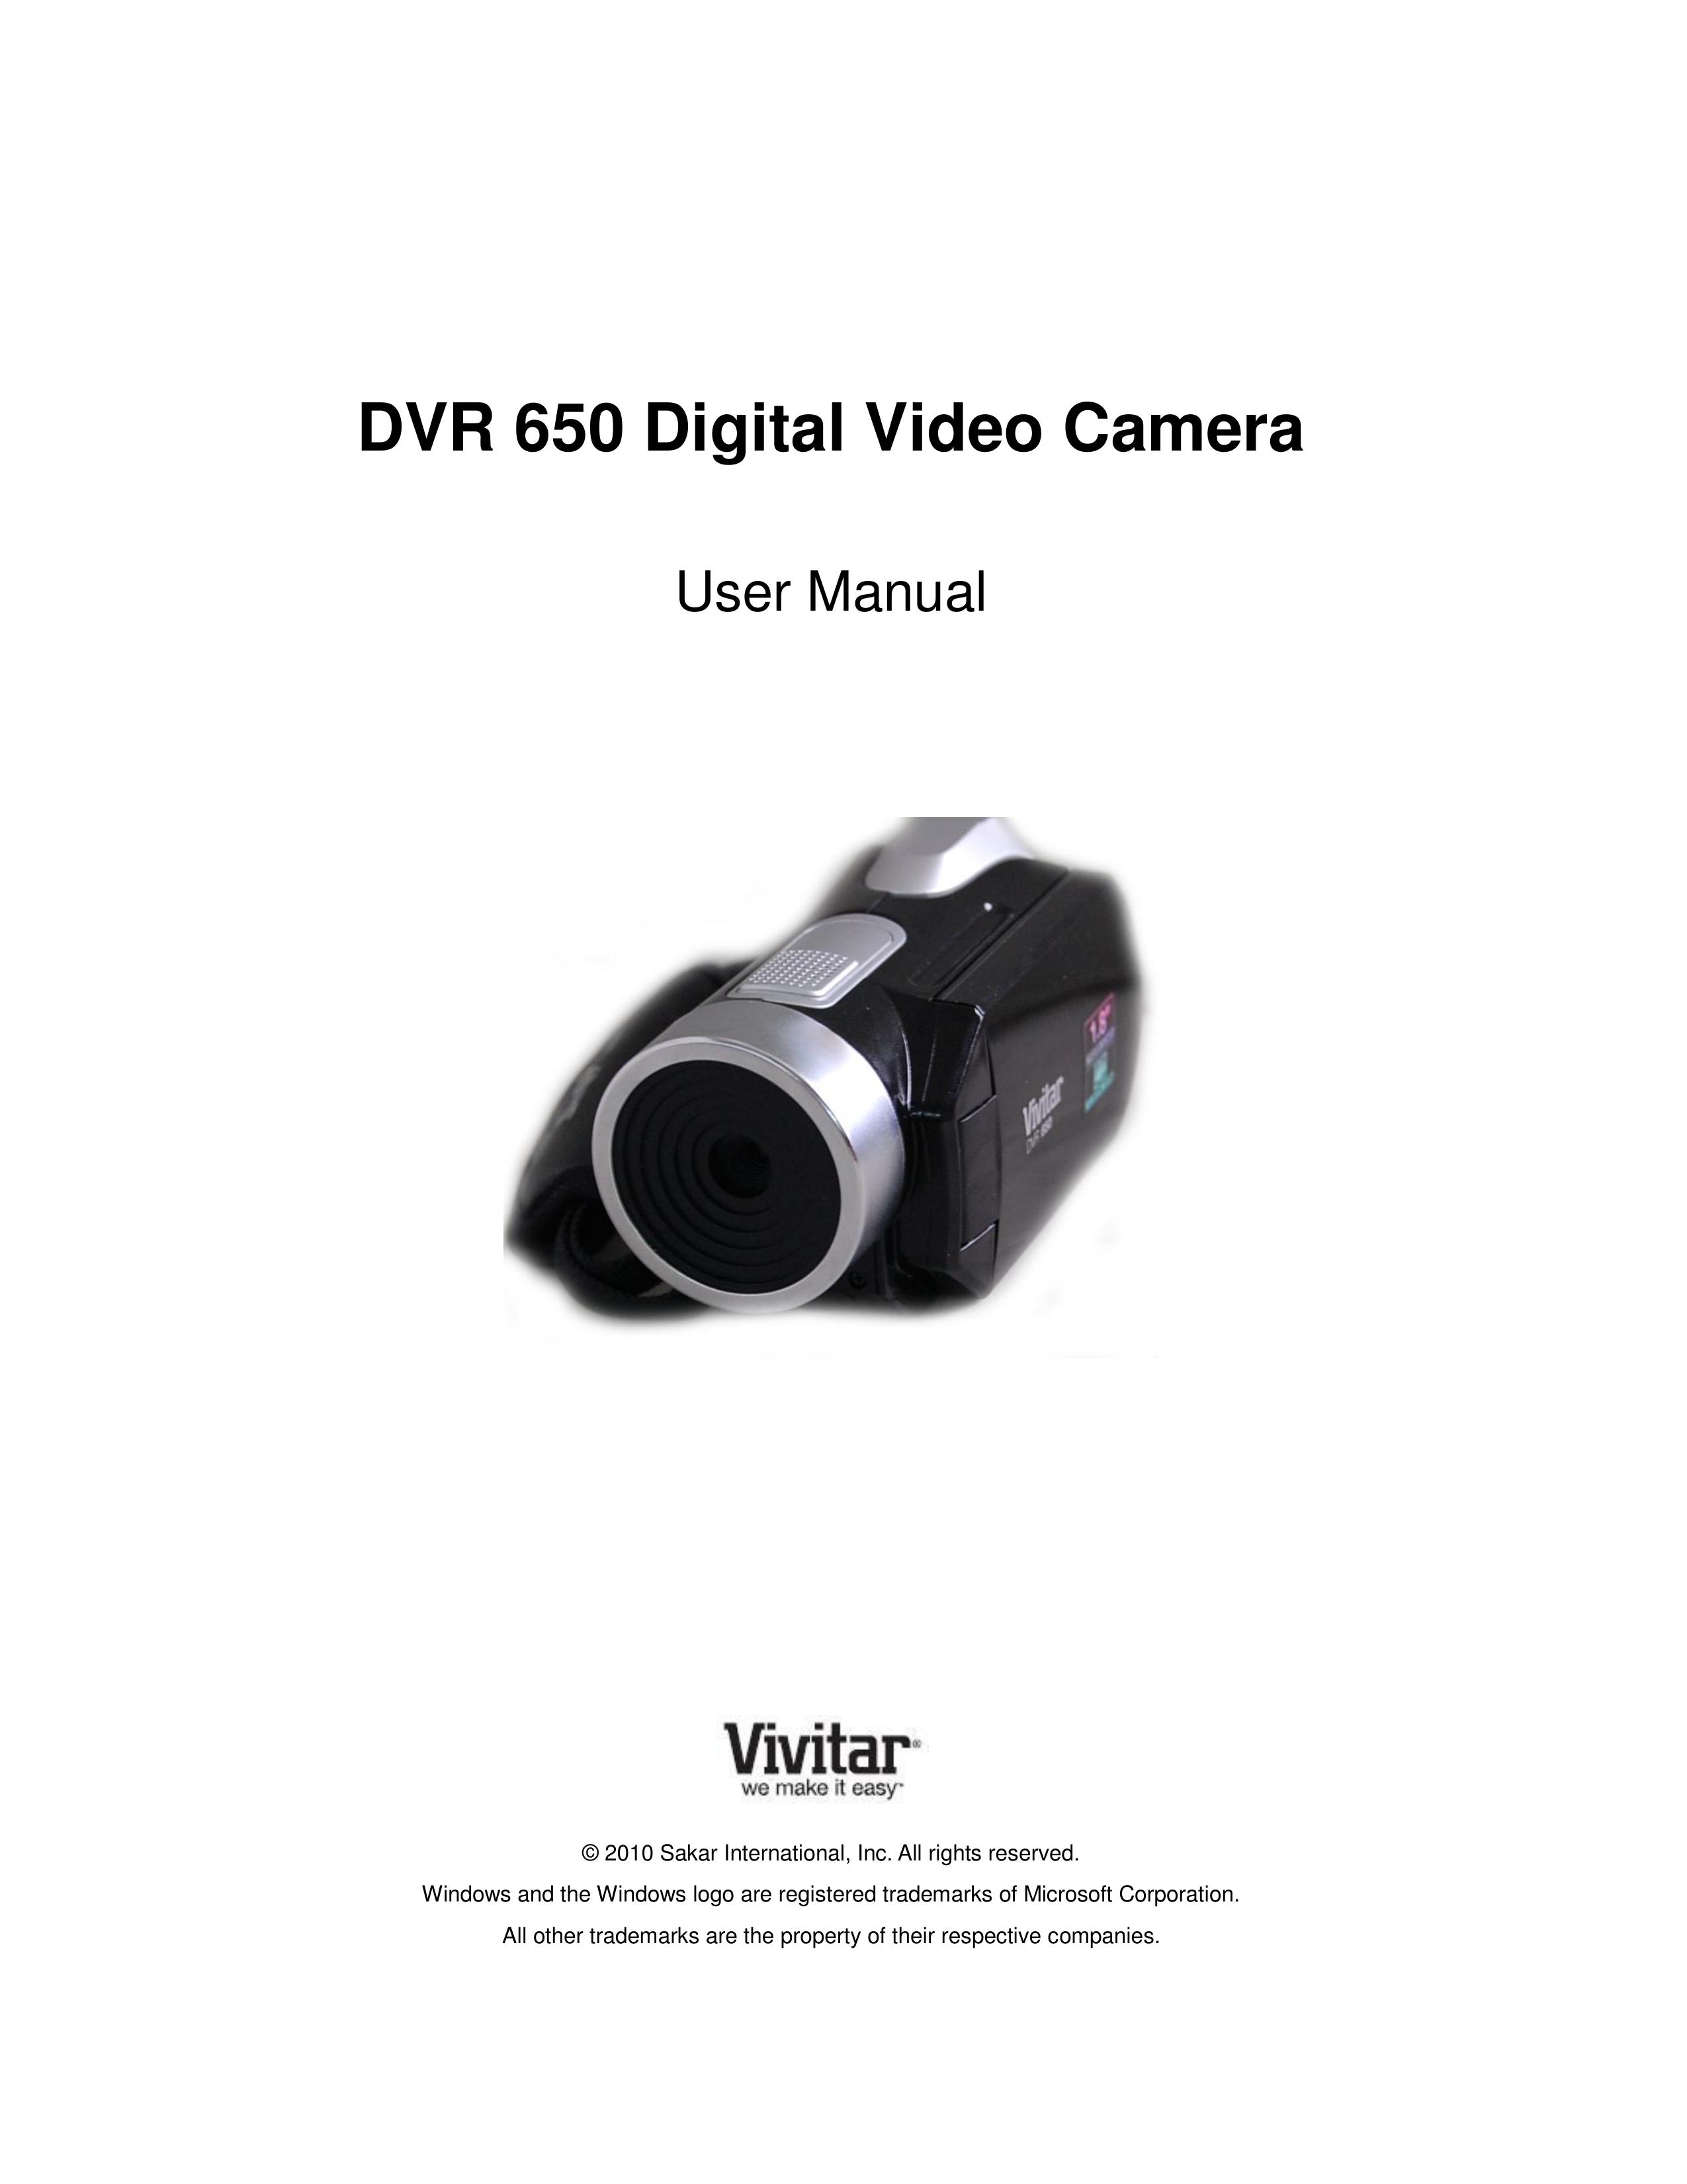 Vivitar DVR650 Camcorder User Manual